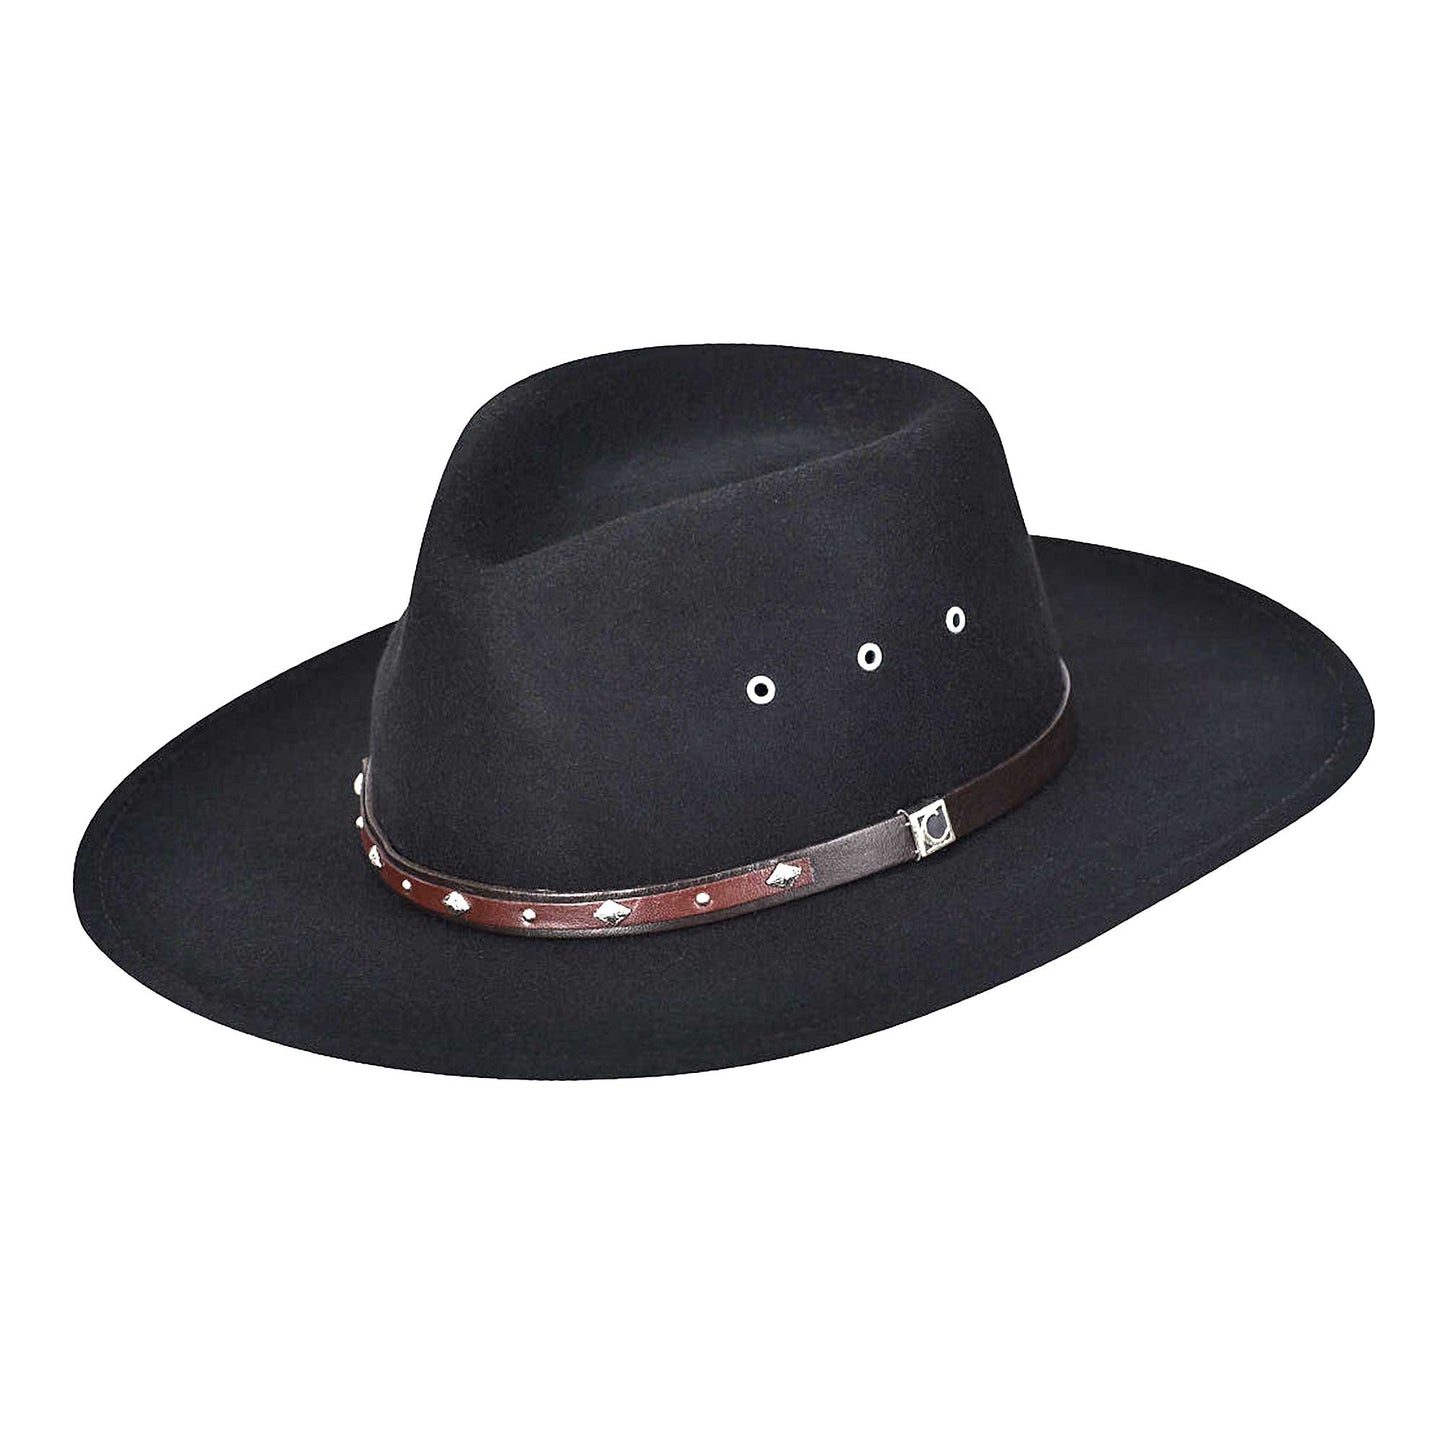 Sombrero Cuadra Negro con cintillo de cuero y aplicaciones metálicas